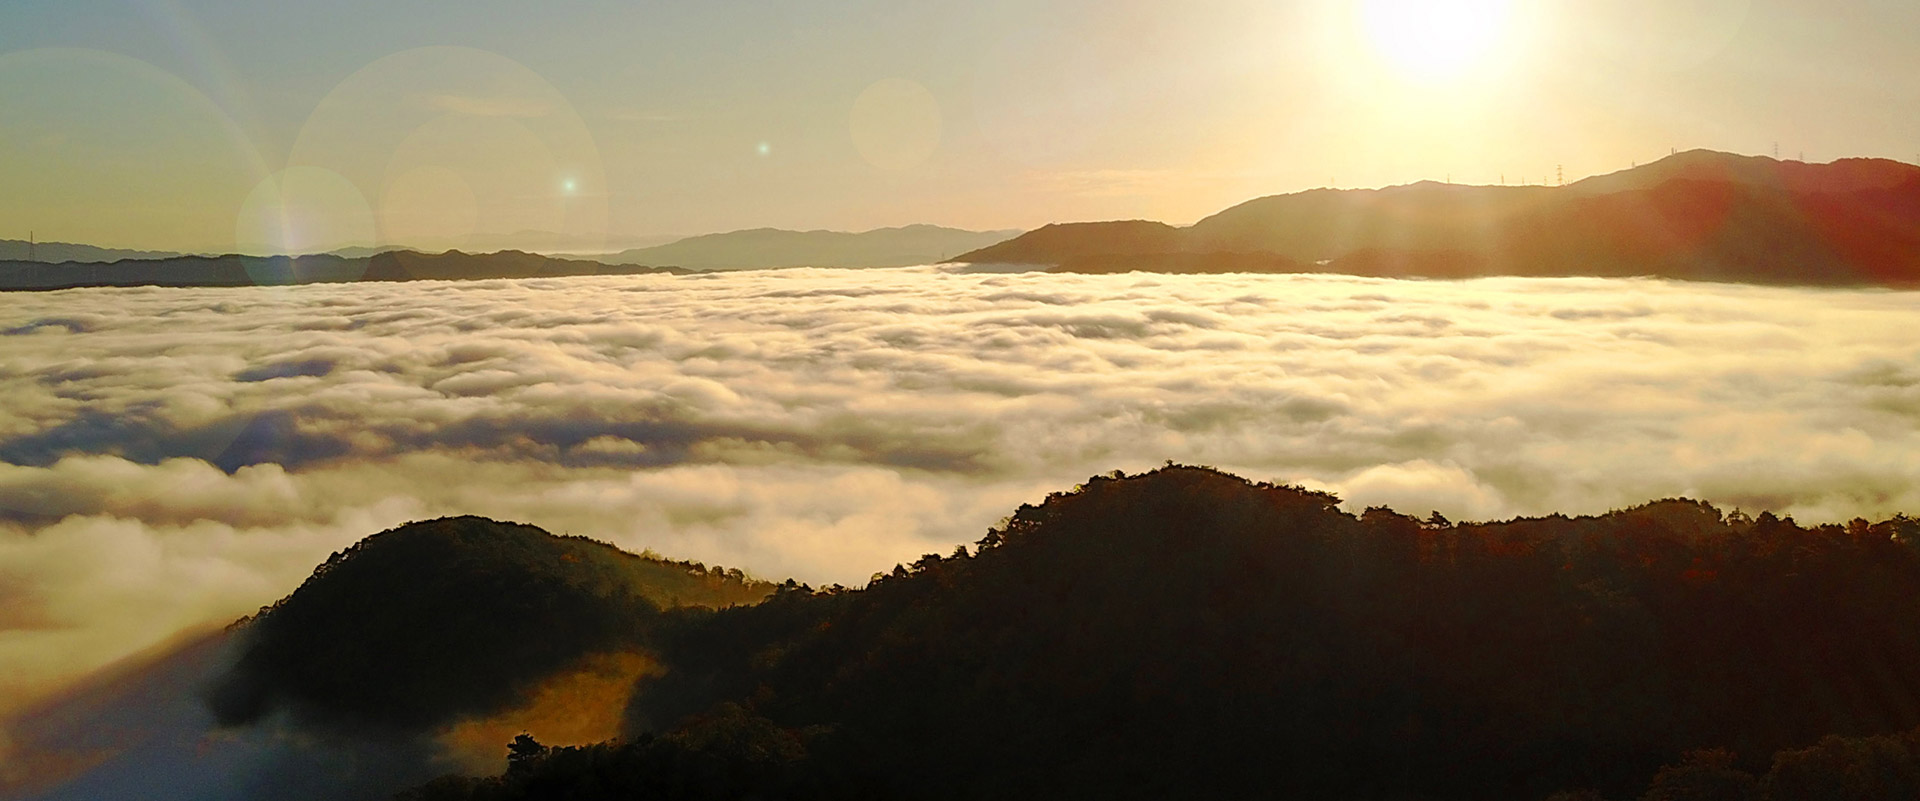 朝日と雲海の写真